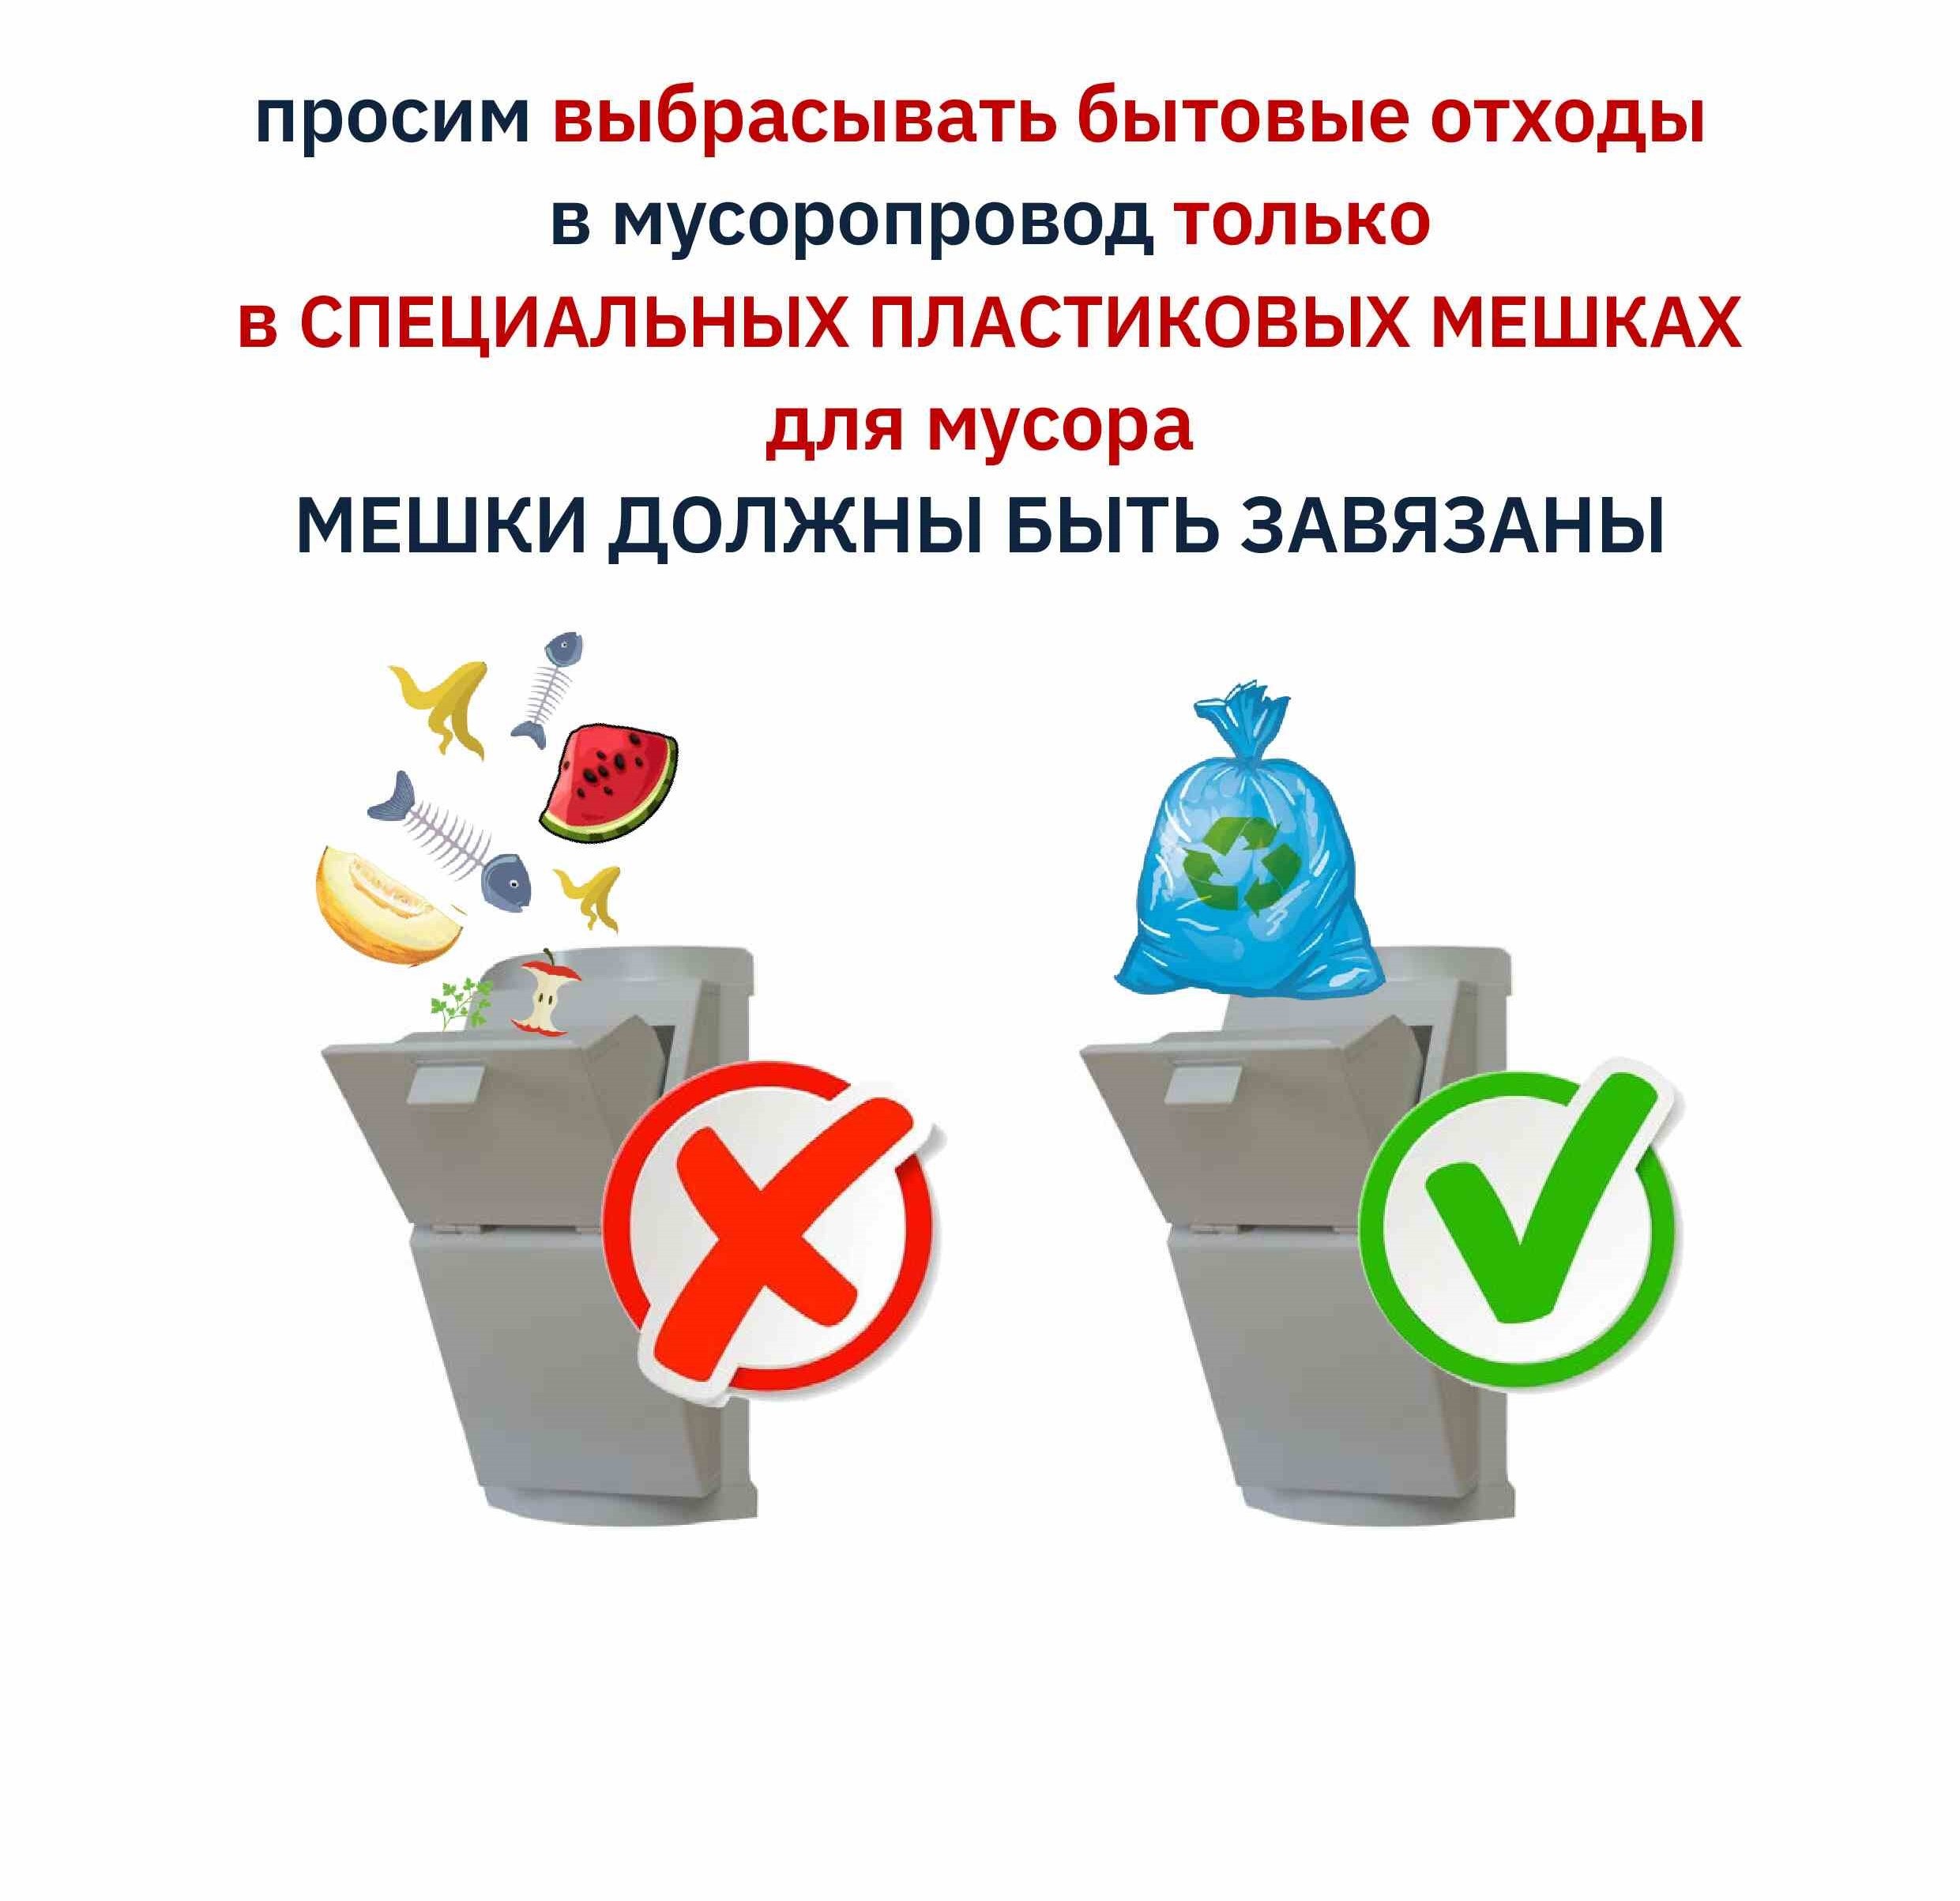 Правила пользования мусоропроводом